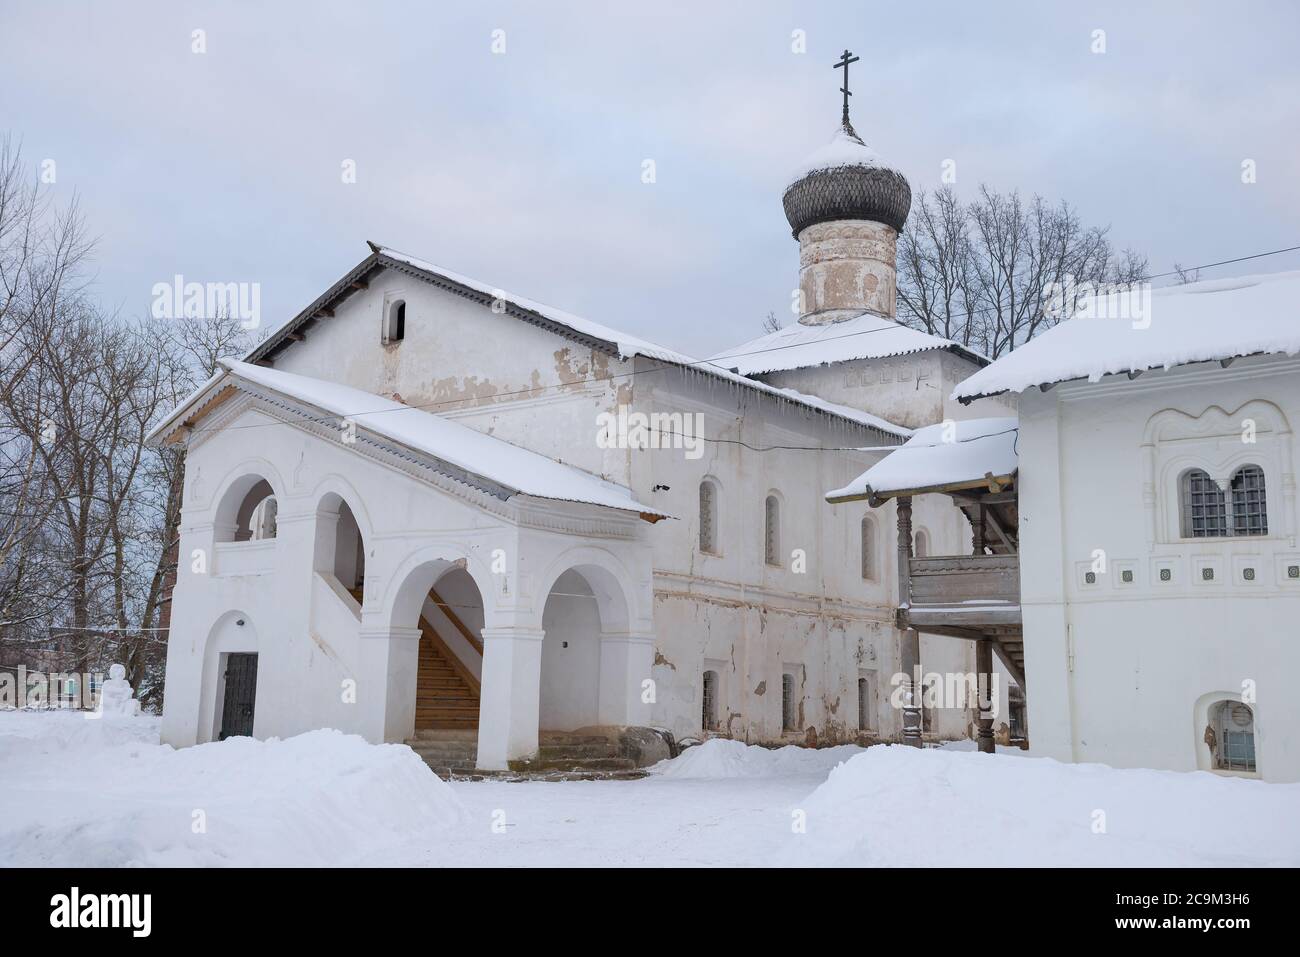 À l'ancienne église de la Présentation du Seigneur dans le monastère de la Transfiguration, le jour de janvier. Staraya Russa, Russie Banque D'Images